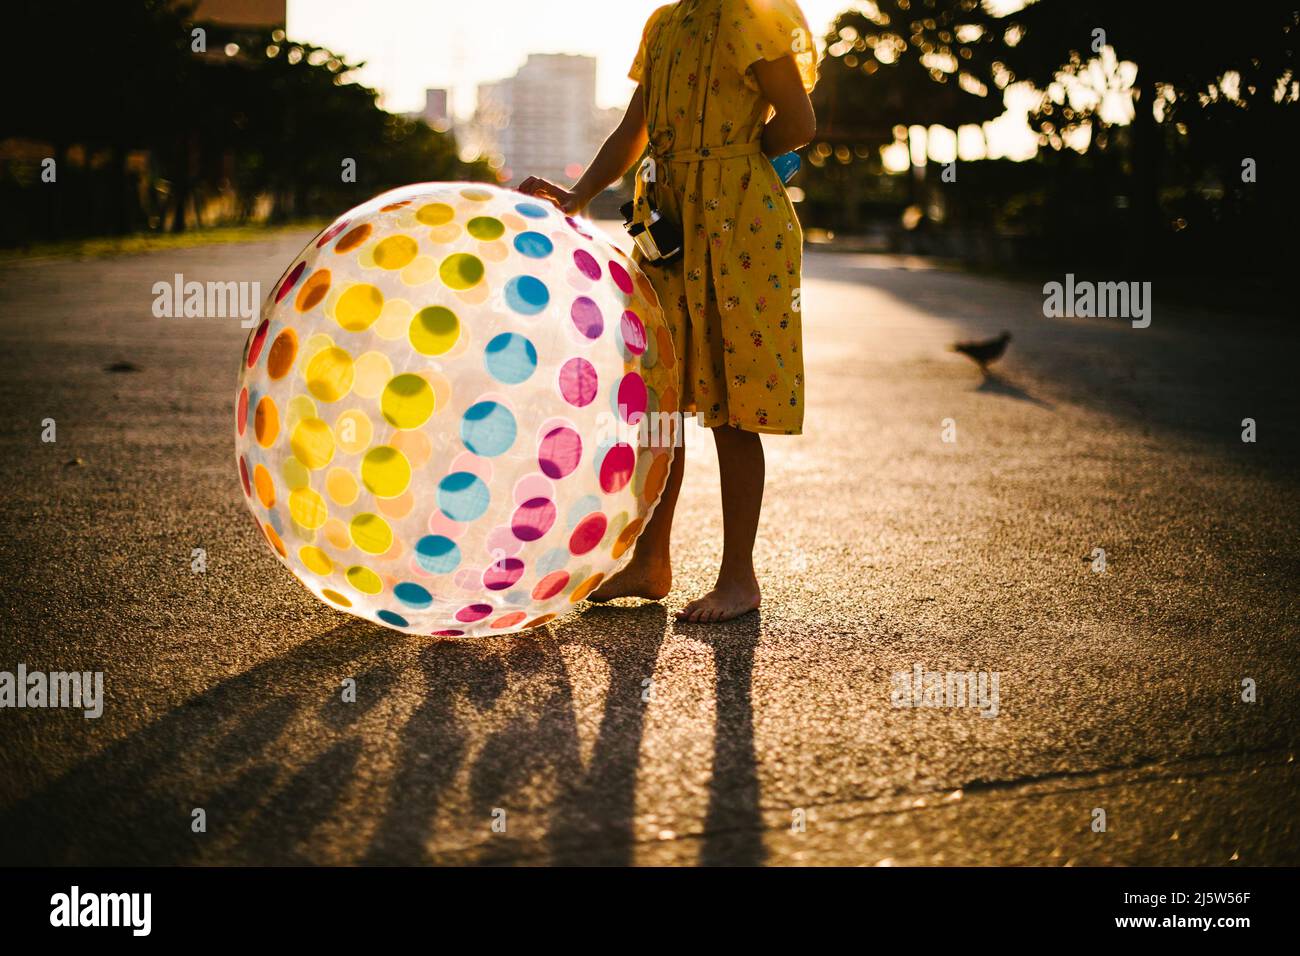 La ragazza si alza in luce dorata con la sfera dell'arcobaleno in abito giallo Foto Stock